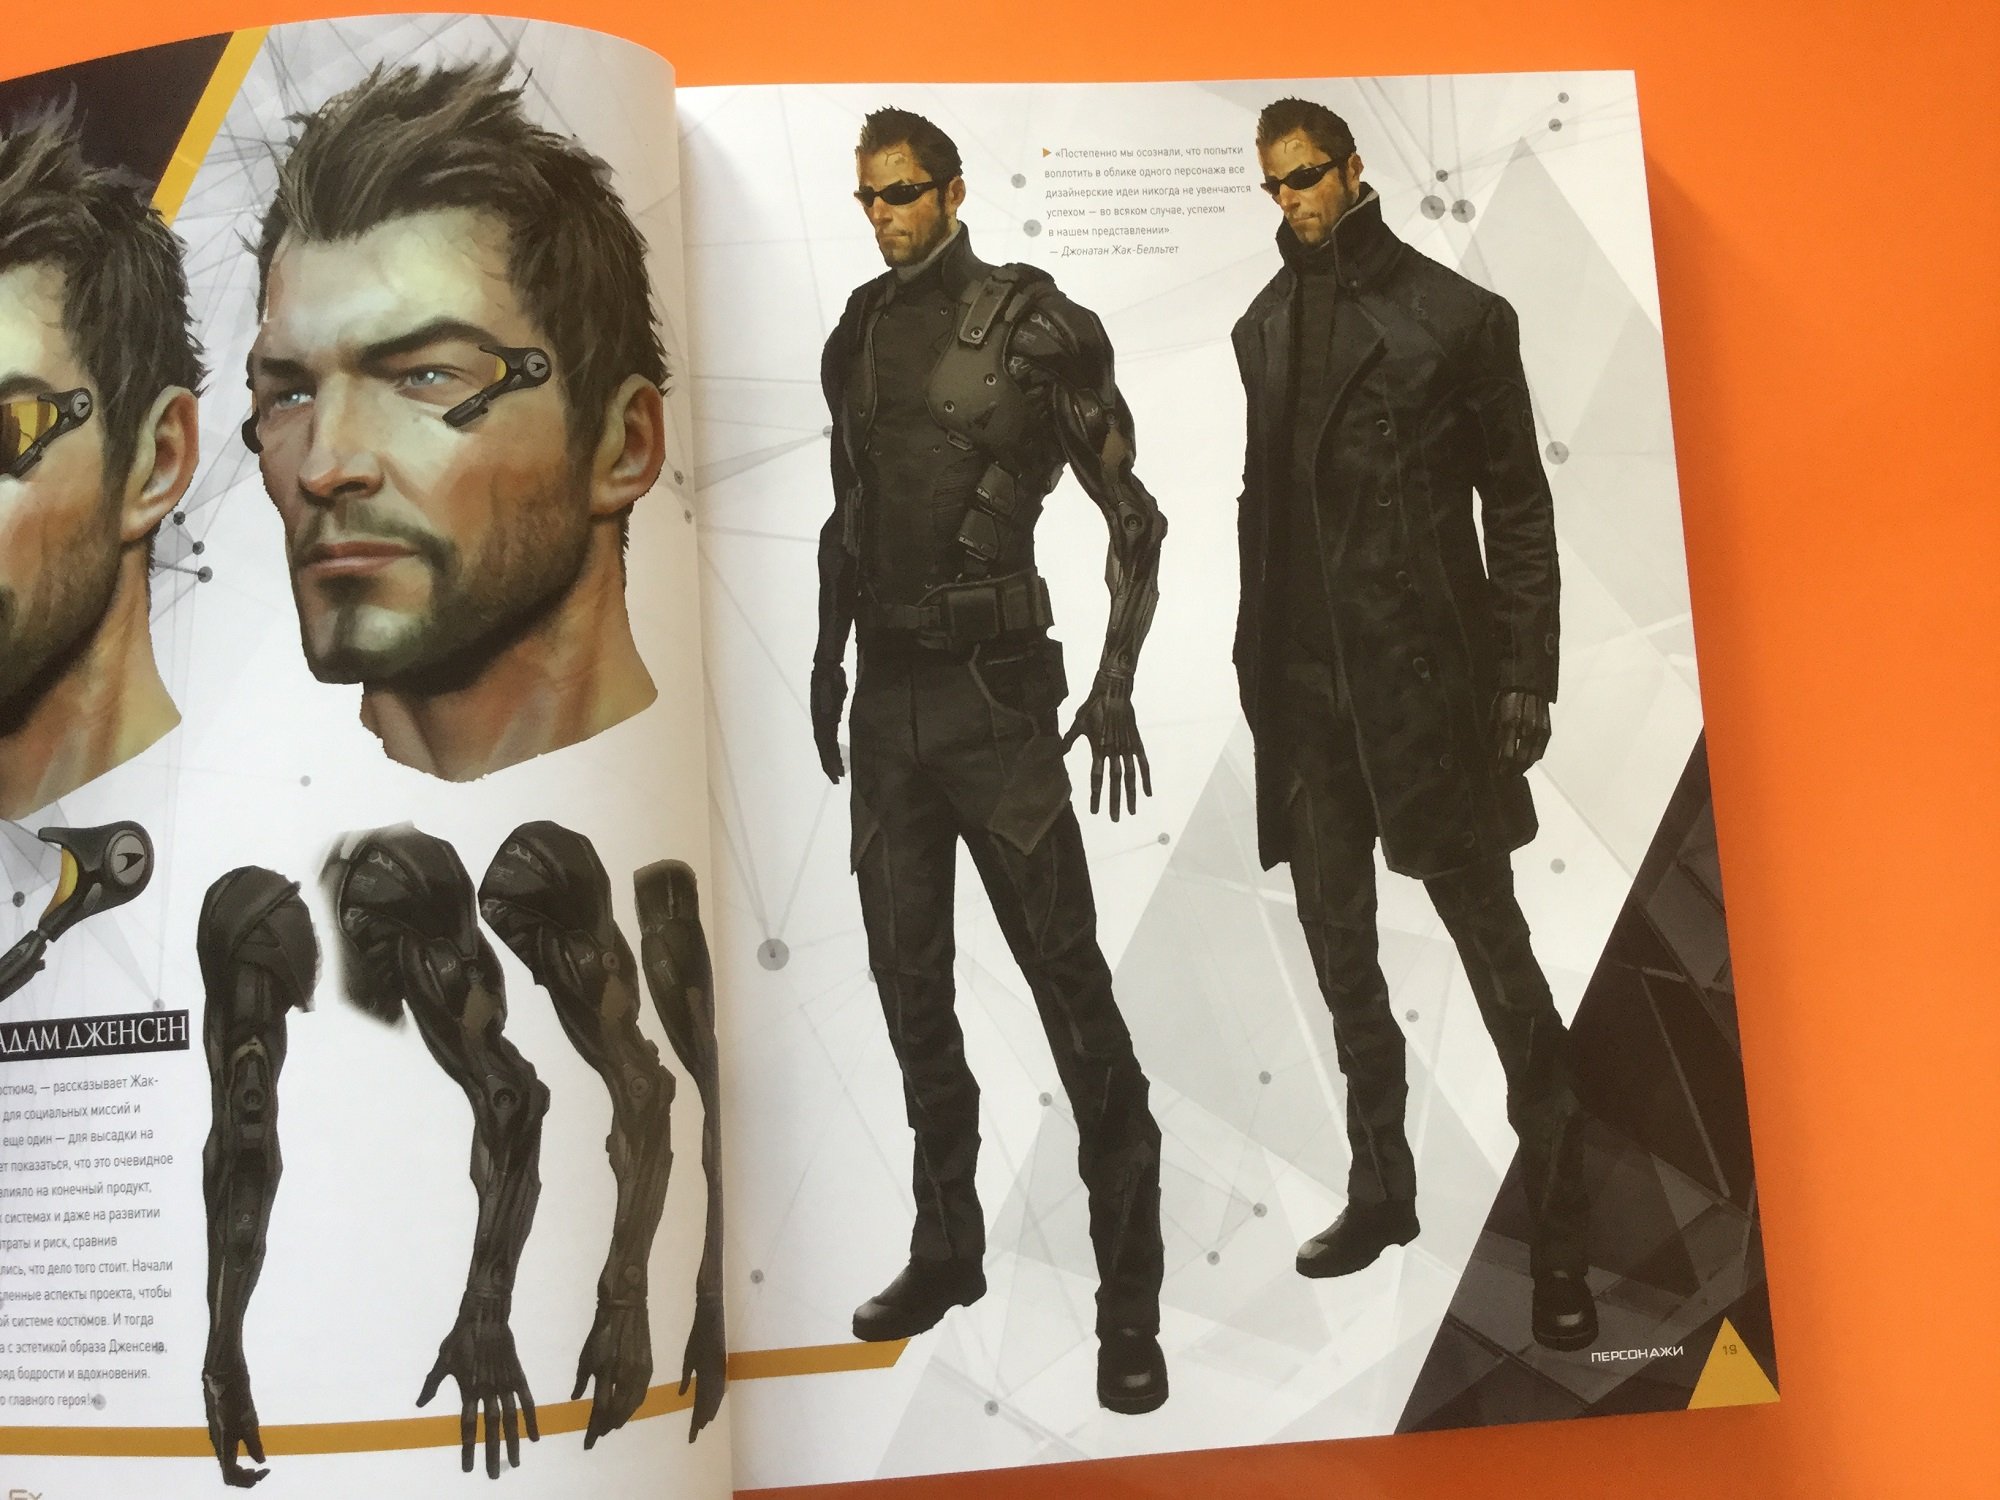 The Art of Deus Ex Universe искусство Deus Ex Universe киберпанк эстетика арт артбук отвратительные мужики disgusting men